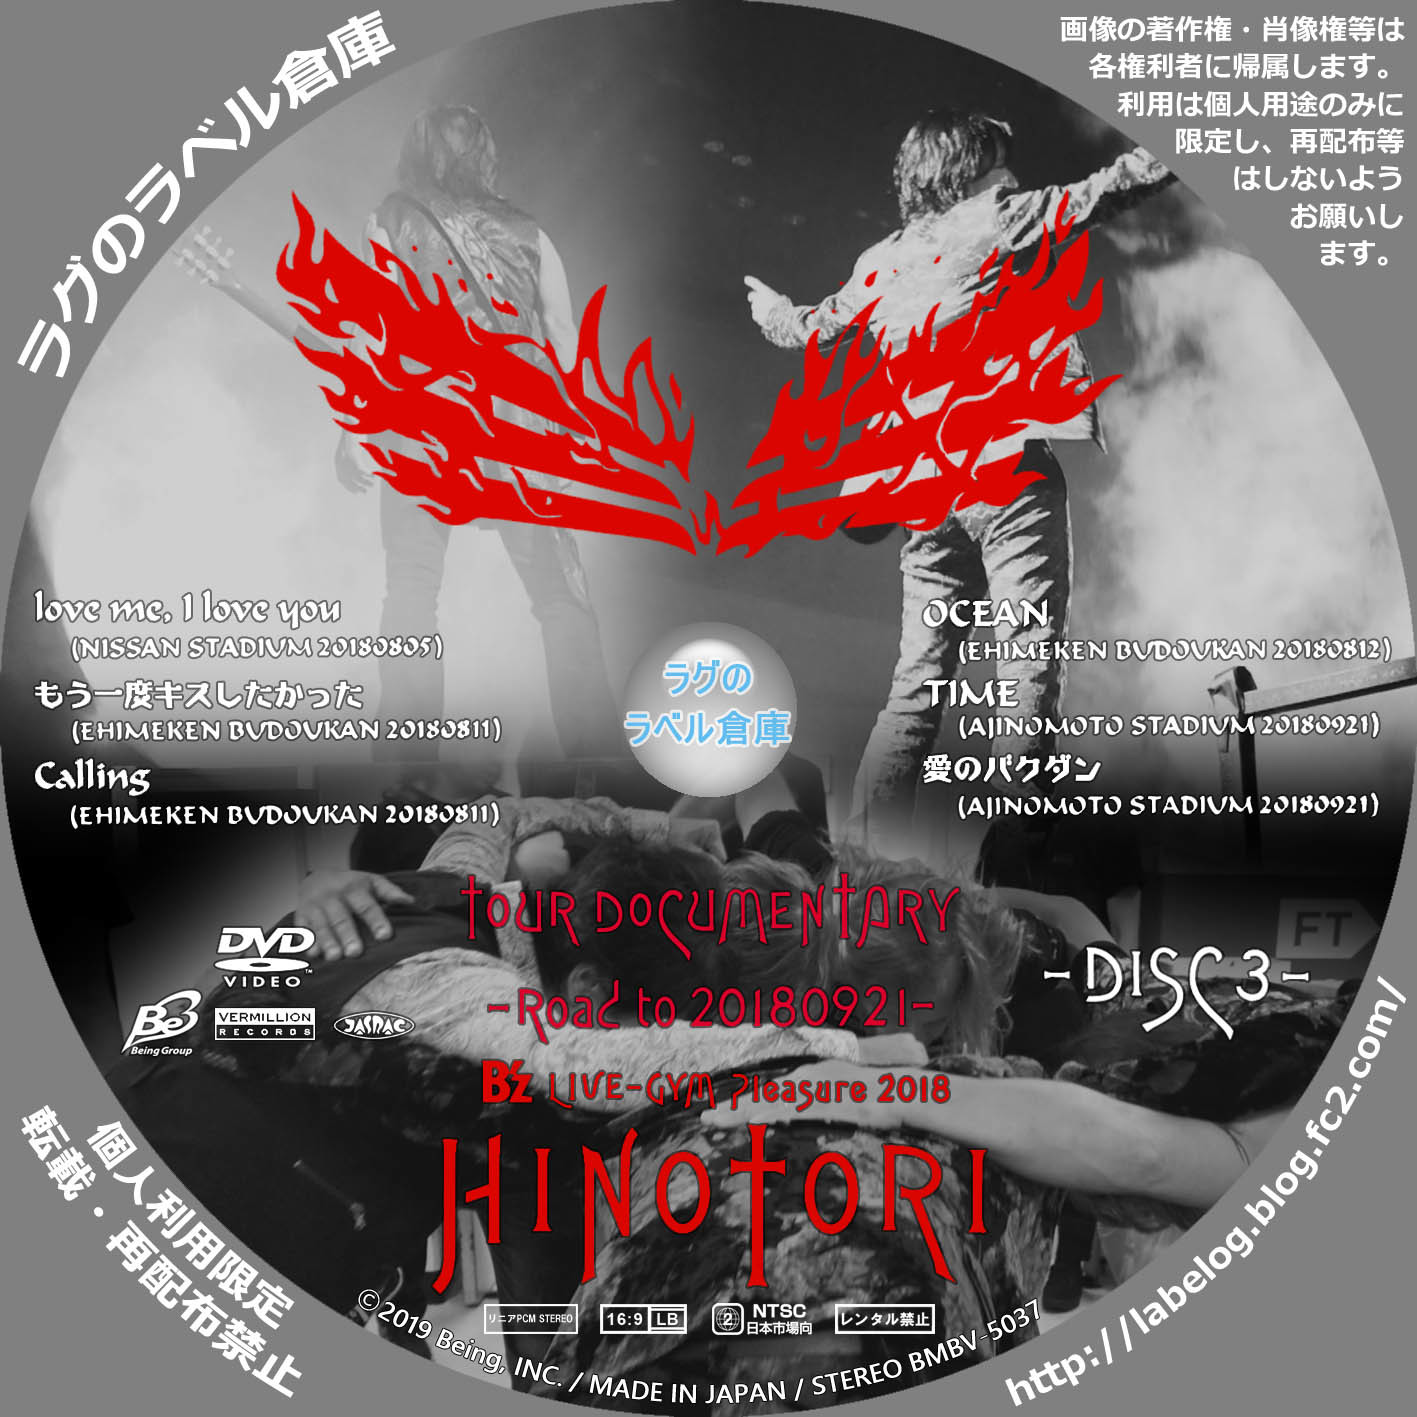 カテゴリー :□B'z DVD / BD ラグの CD / DVD / BD 自作ラベル倉庫